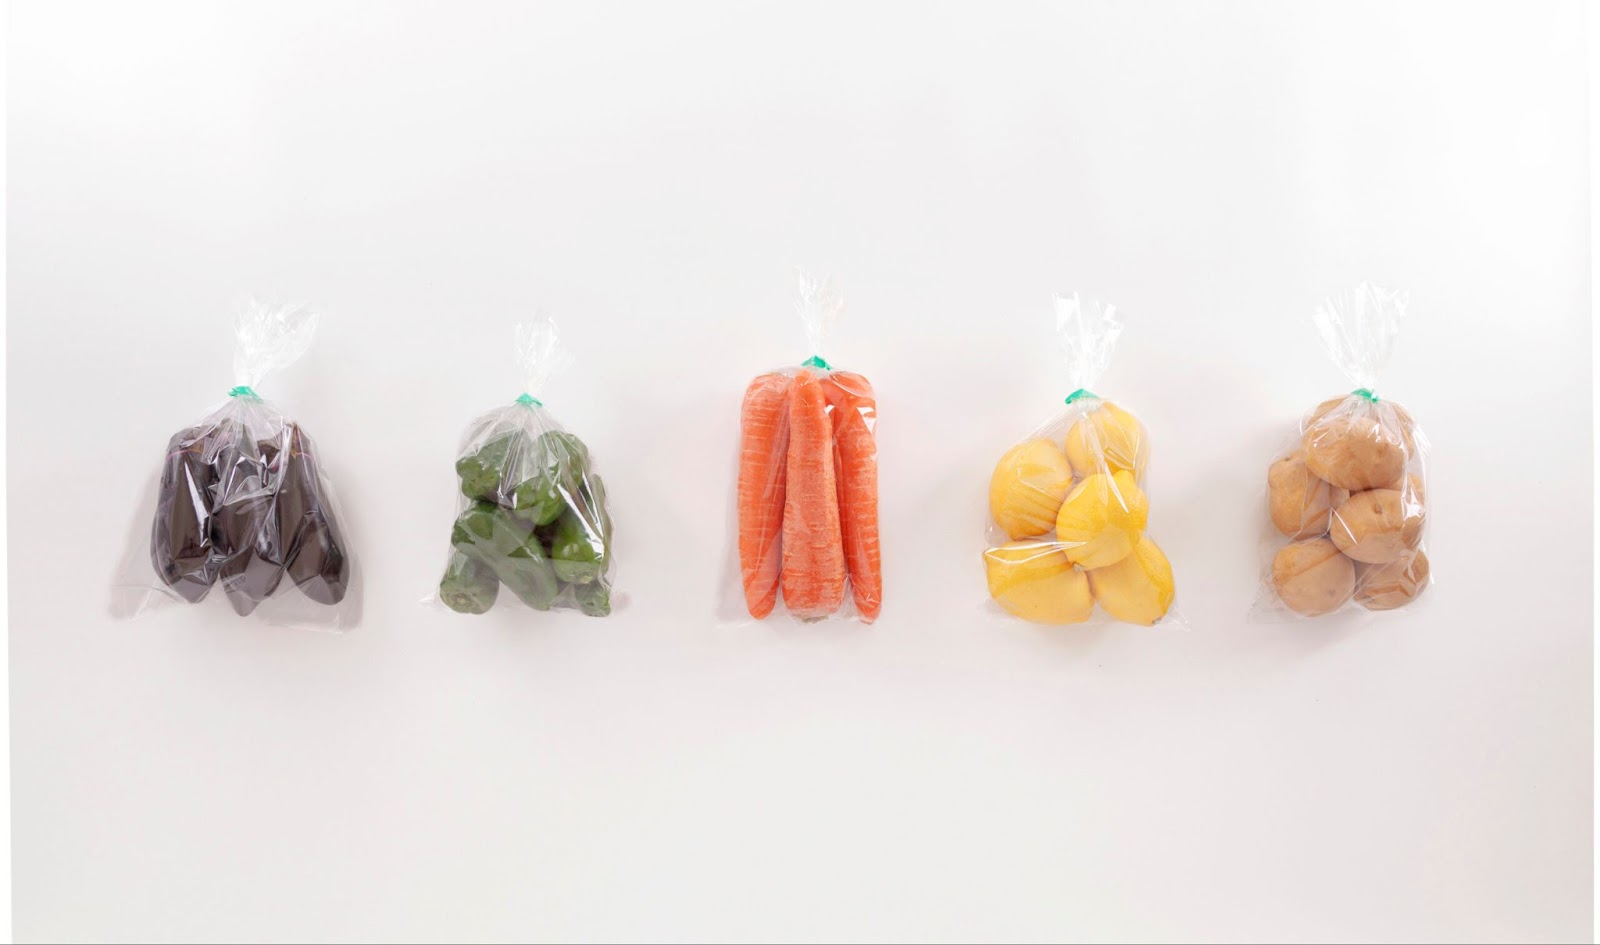 野菜の包装資材の種類6つ。消費者に手に取ってもらう包装資材の選び方とは|第一包装資材